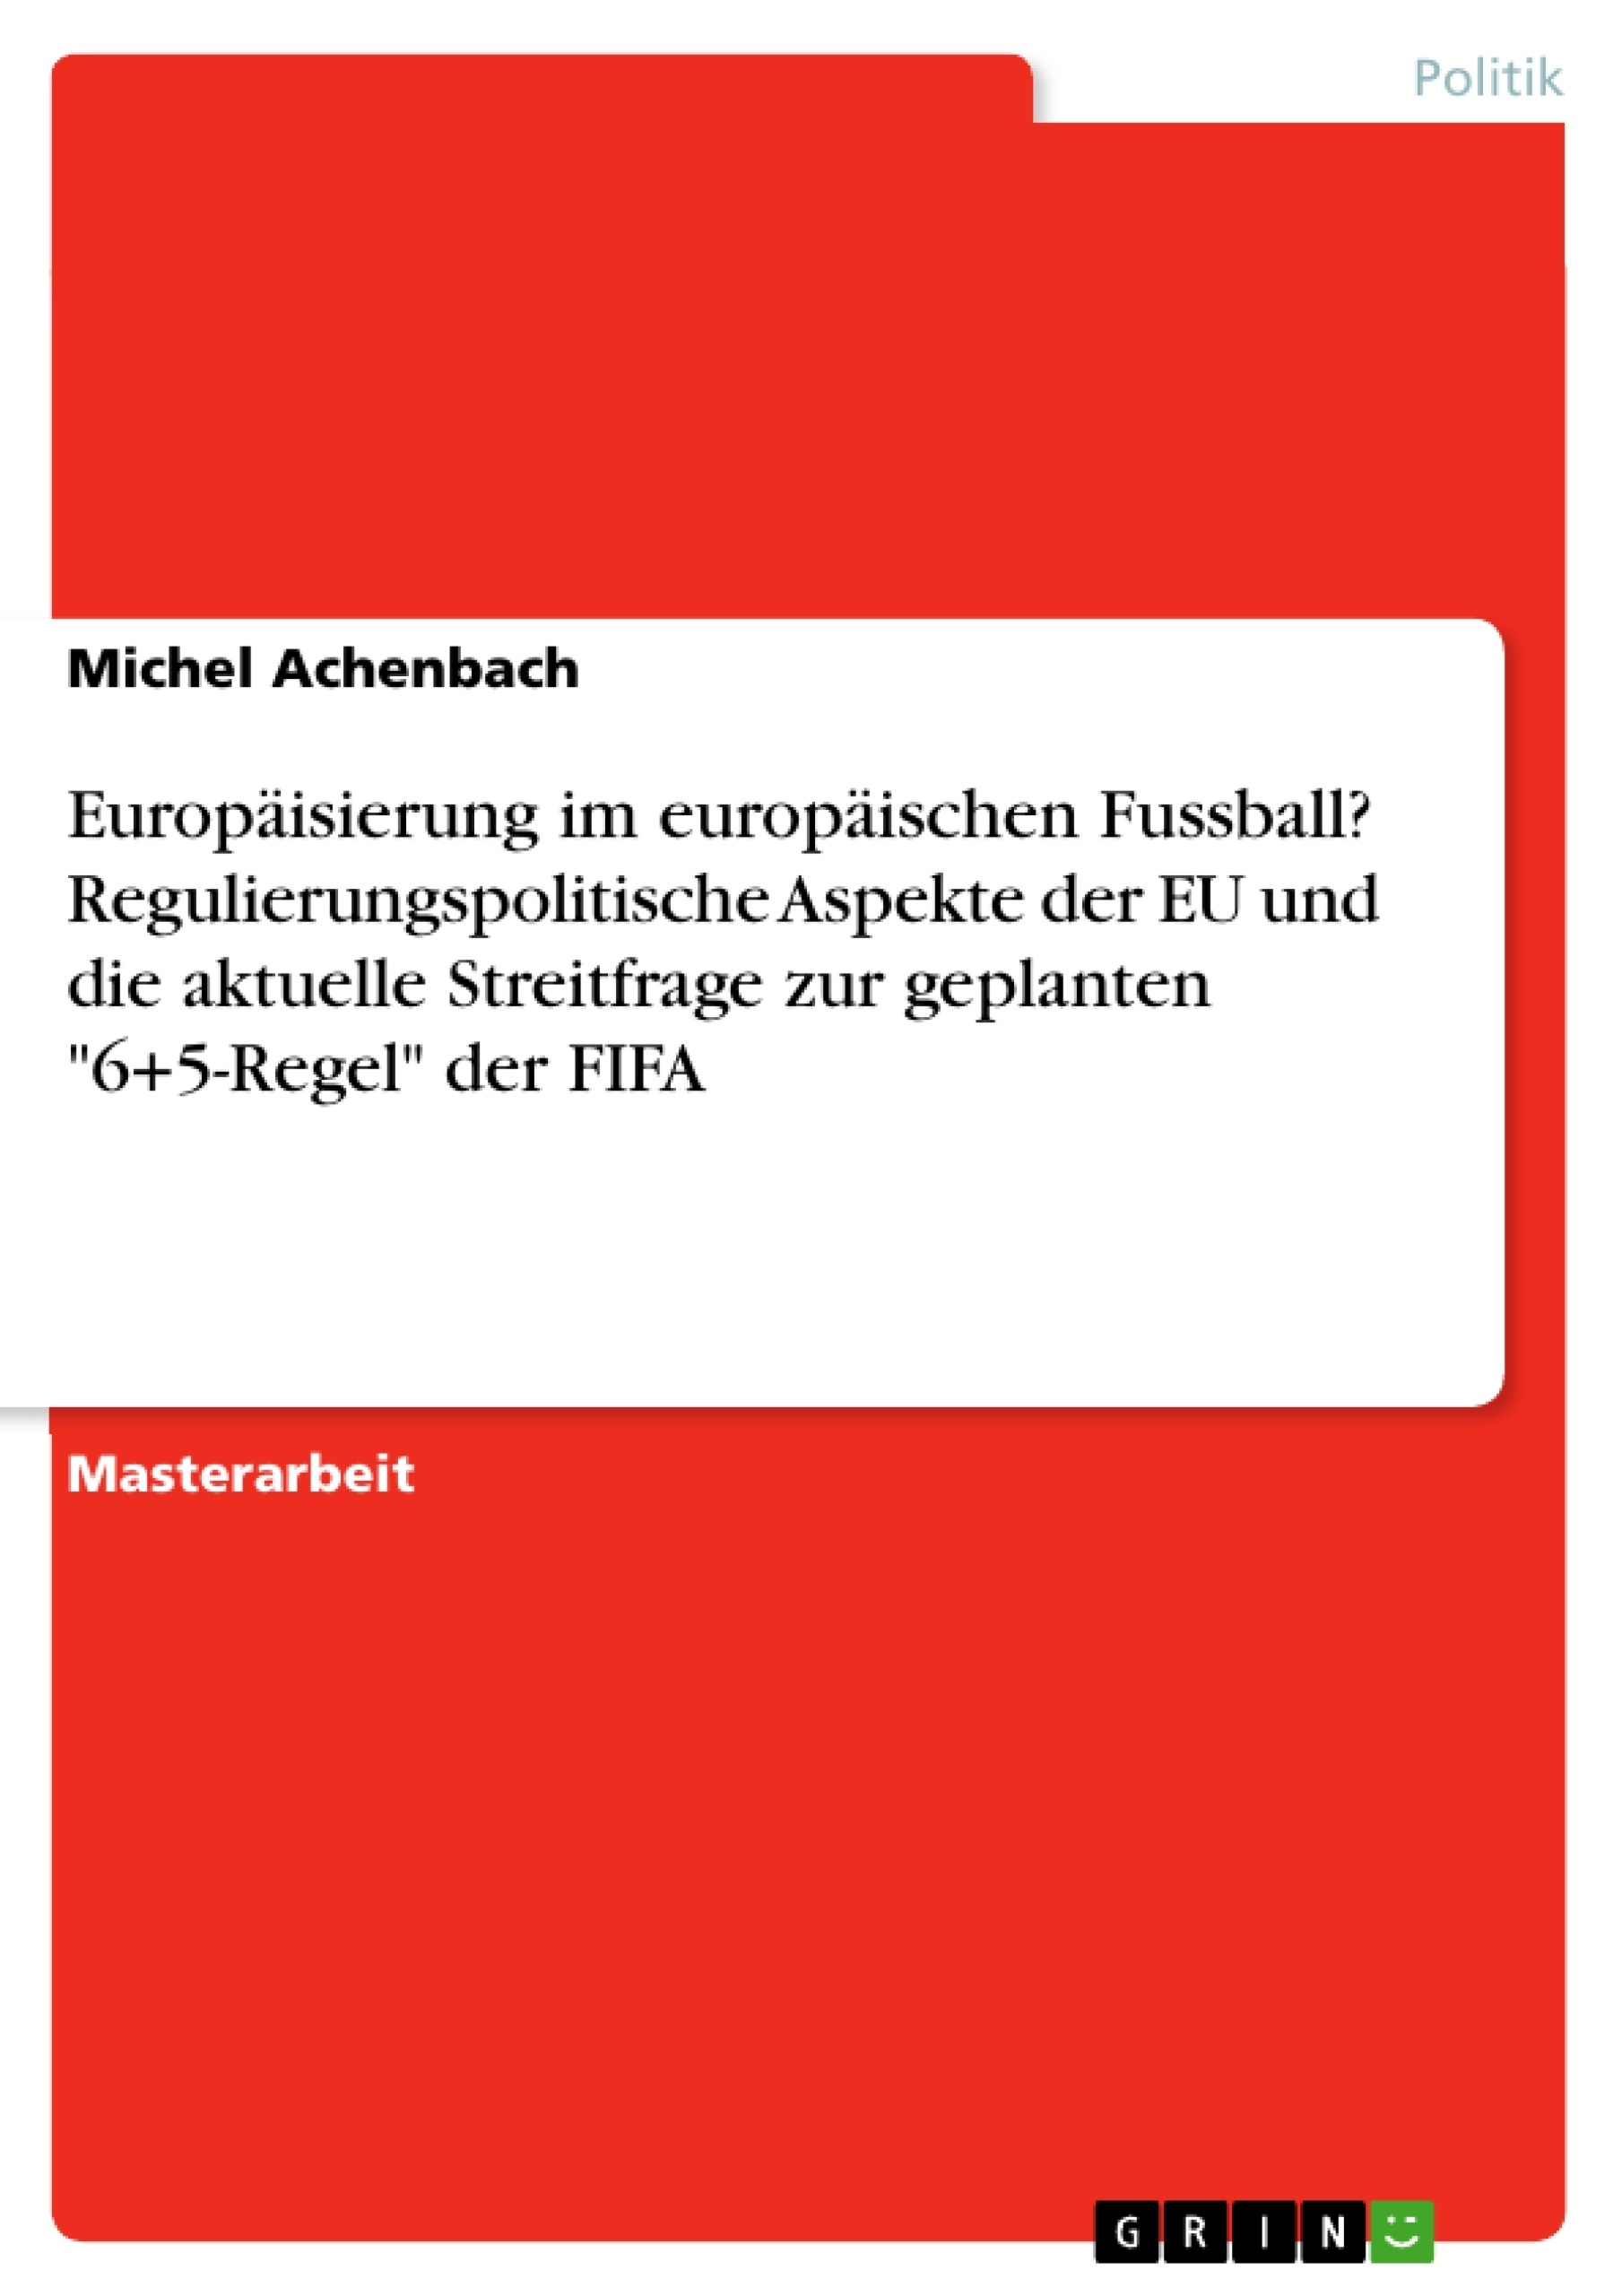 Title: Europäisierung im europäischen Fussball? Regulierungspolitische Aspekte der EU und die aktuelle Streitfrage zur geplanten "6+5-Regel" der FIFA